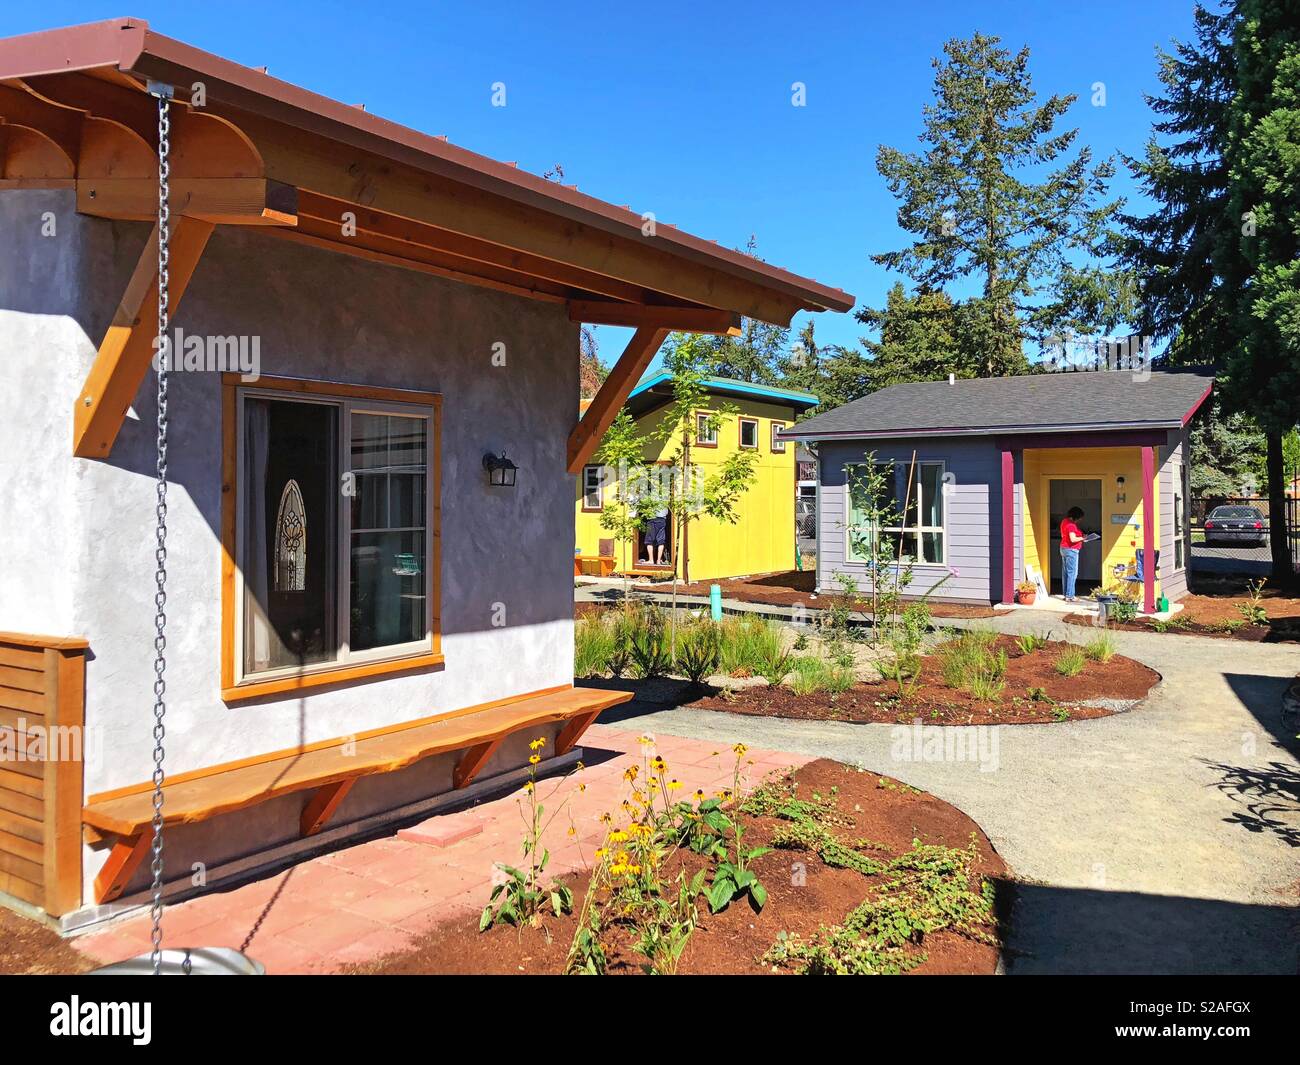 Emerald village tiny house community in Eugene, Oregon, USA. Stock Photo